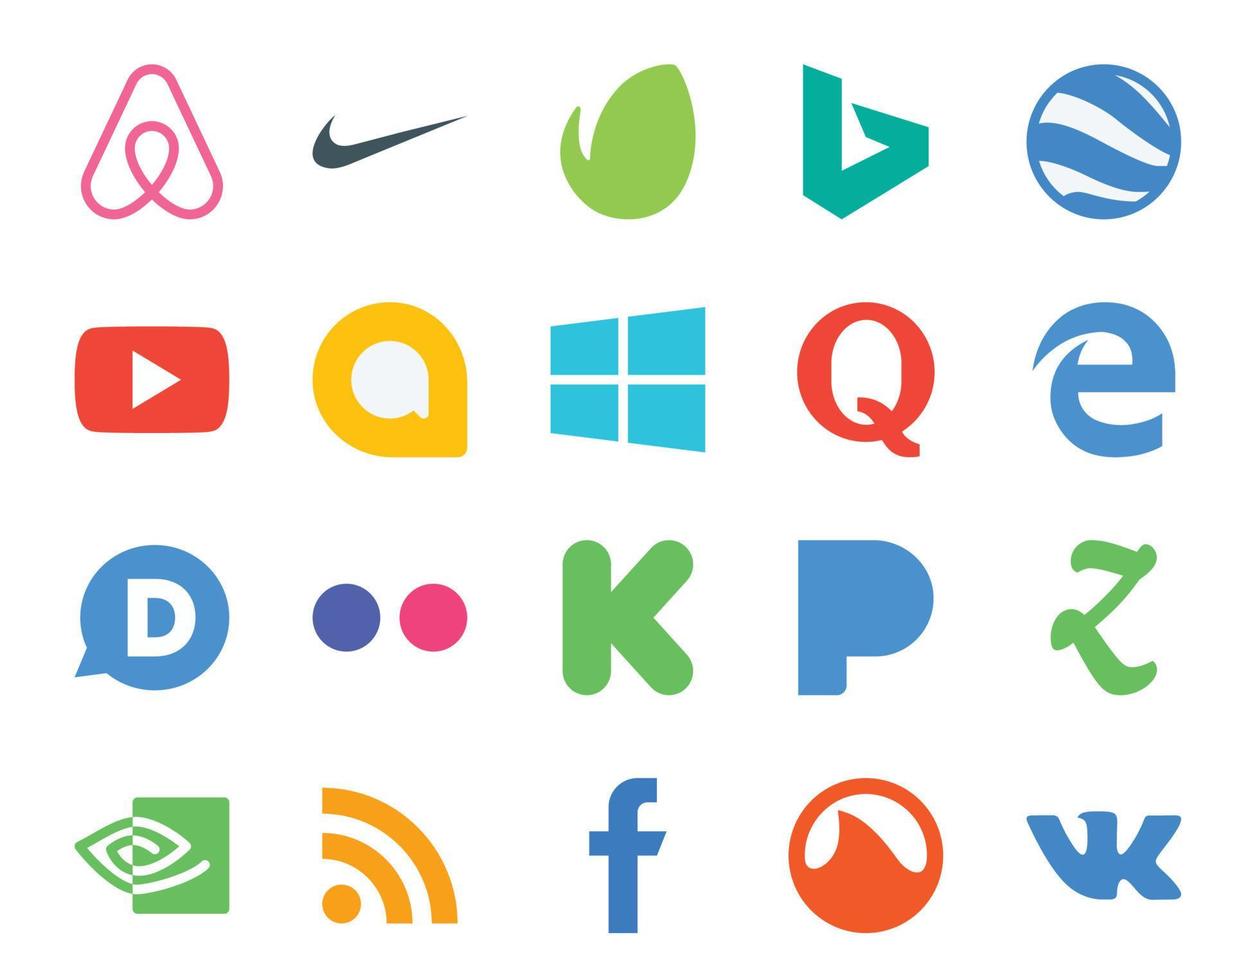 20 Social Media Icon Pack Including nvidia pandora windows kickstarter disqus vector